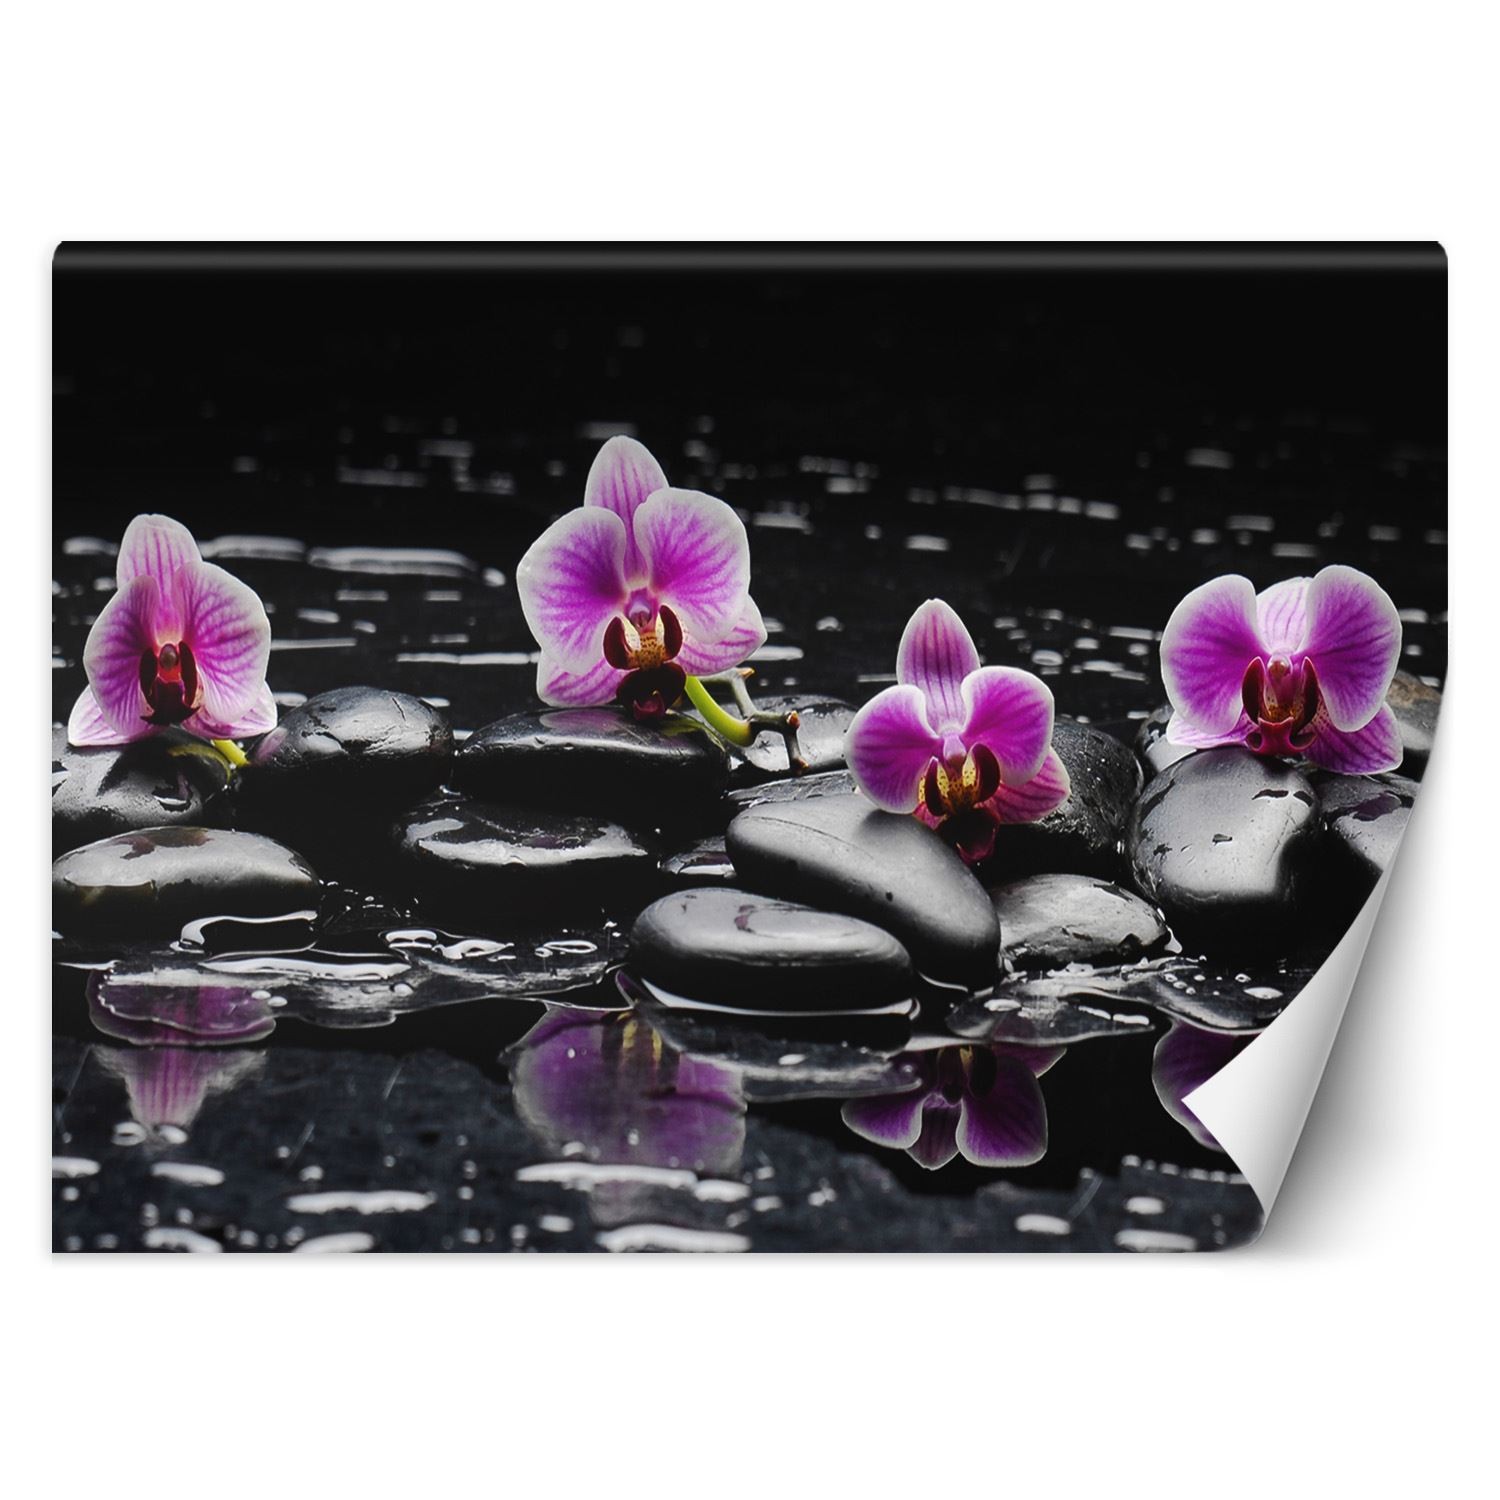 Trend24 – Behang – Zen Stones & Orchid – Behangpapier – Fotobehang – Behang Woonkamer – 250x175x2 cm – Incl. behanglijm